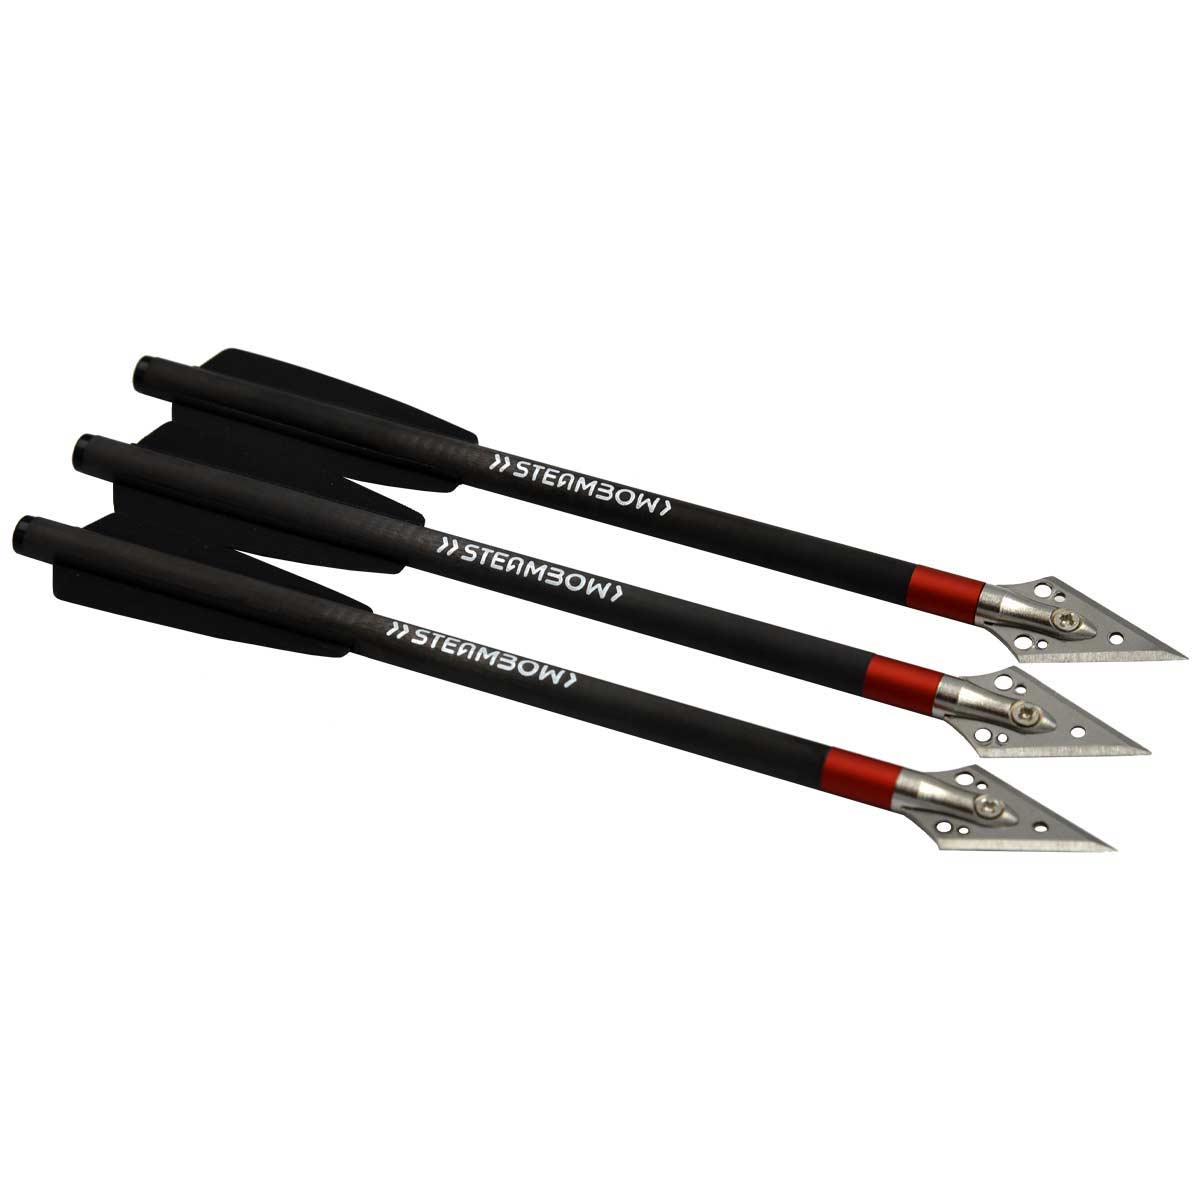 AR-Series – frecce da caccia leggere in carbonio – set di 3 pezzi